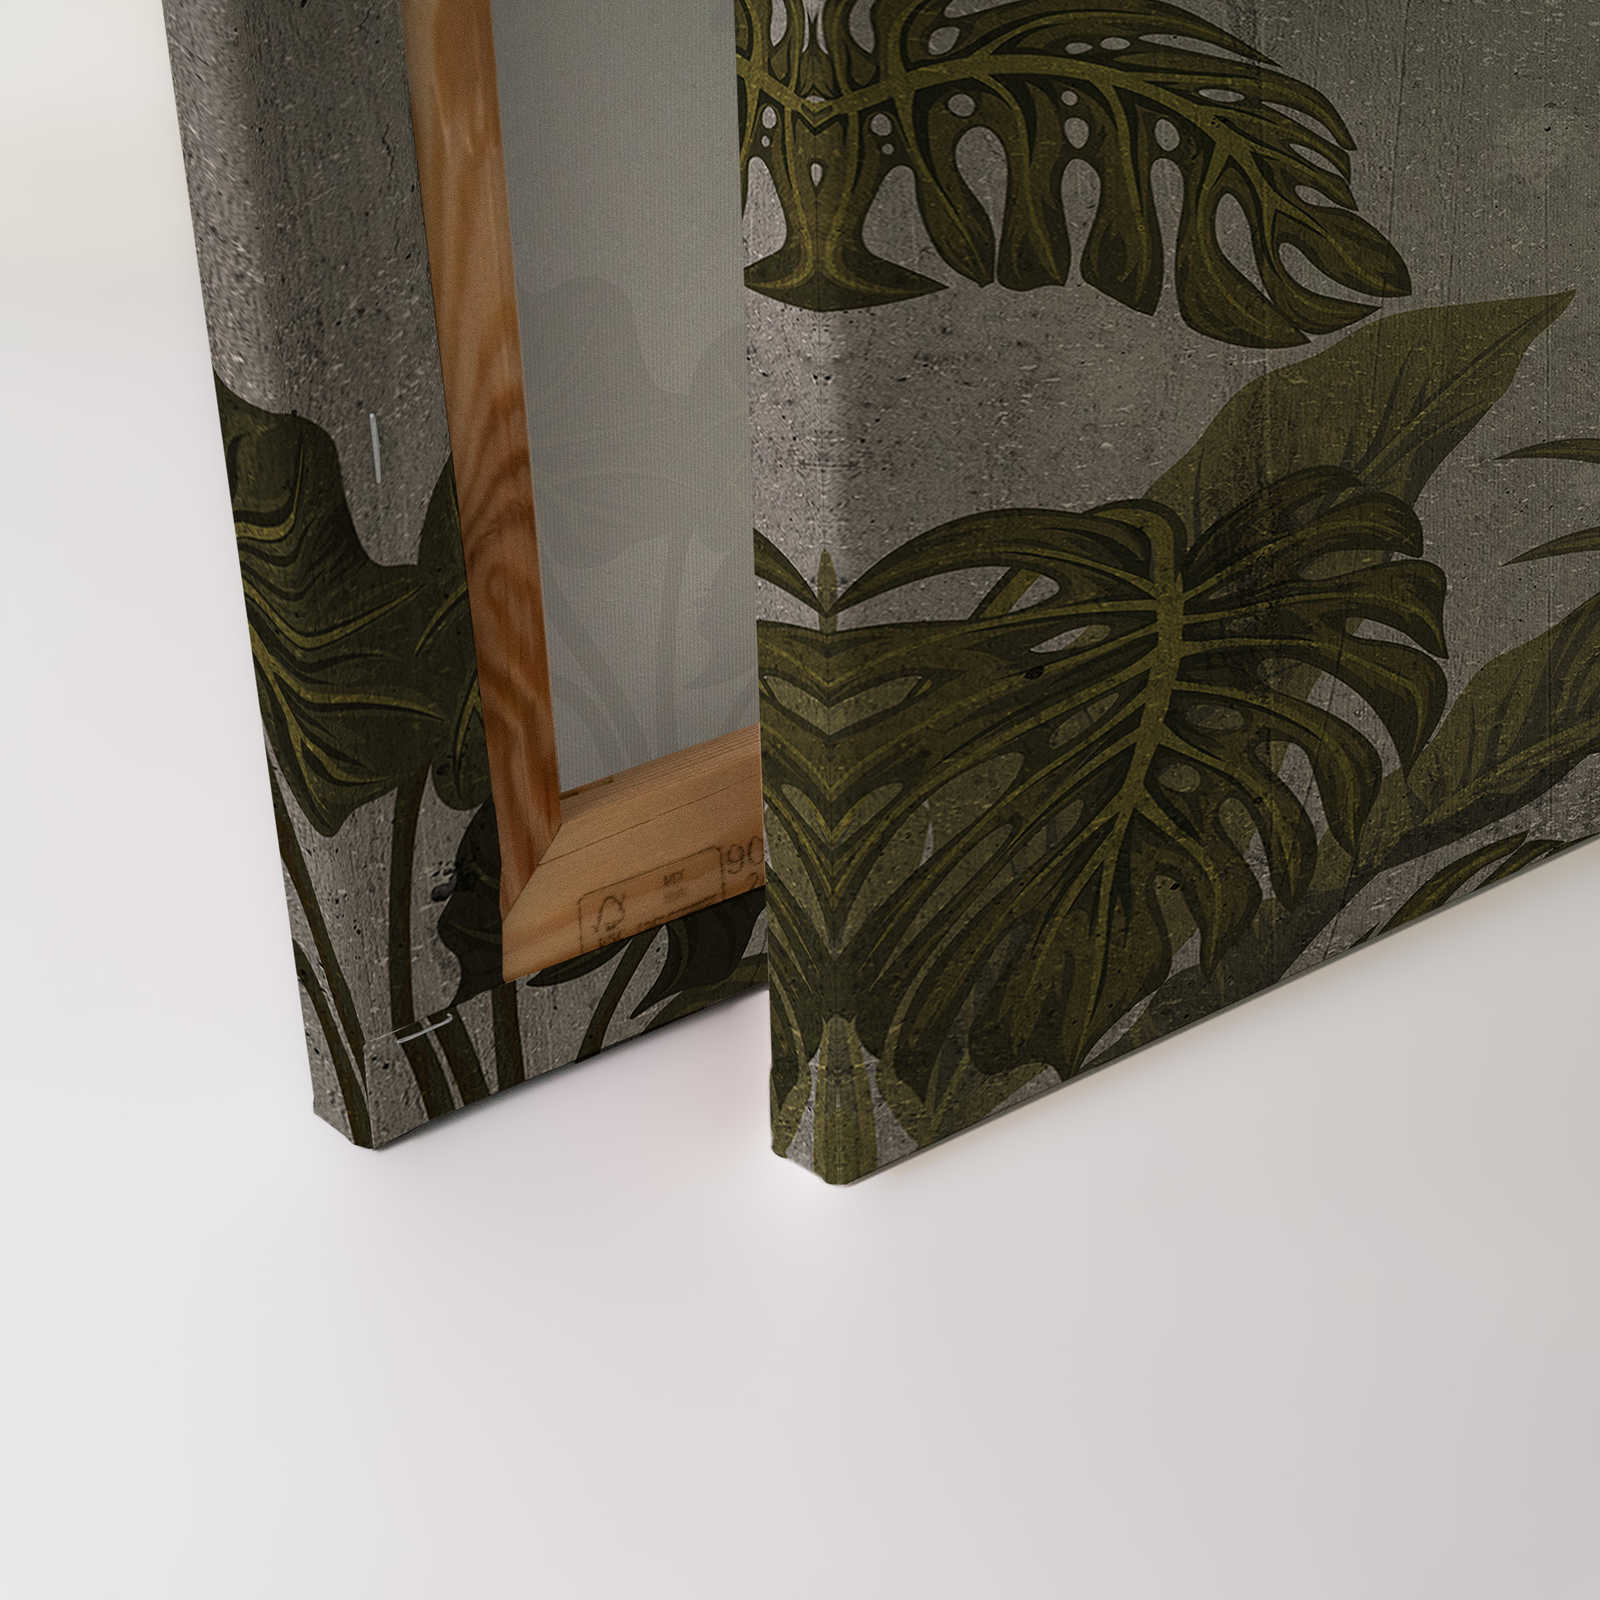             Tableau toile avec paysage tropical sur imitation béton - 0,90 m x 0,60 m
        